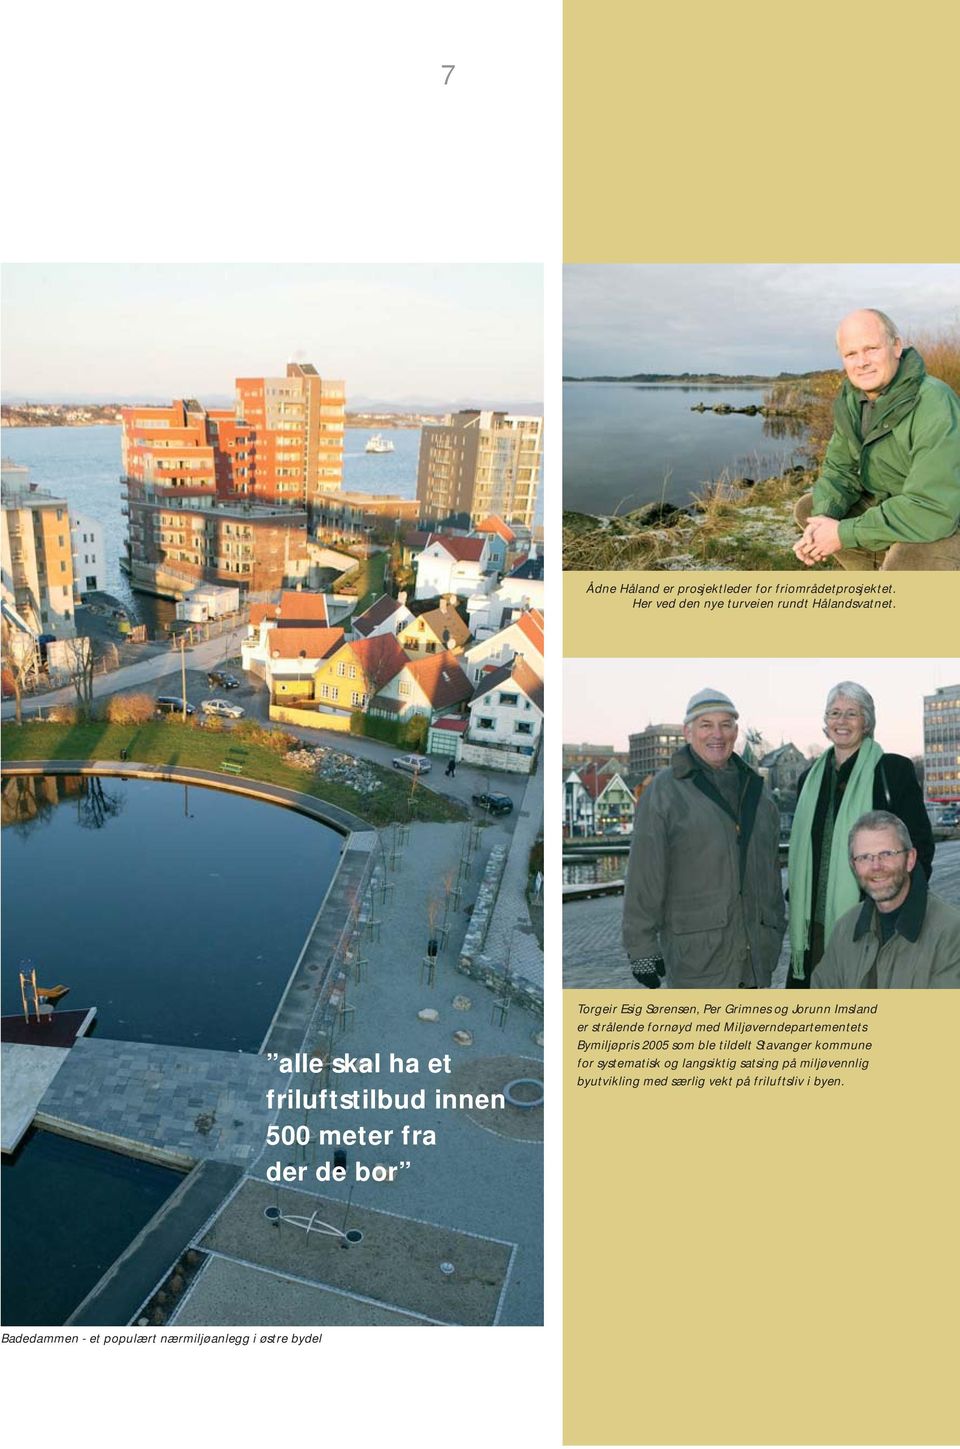 strålende fornøyd med Miljøverndepartementets Bymiljøpris 2005 som ble tildelt Stavanger kommune for systematisk og